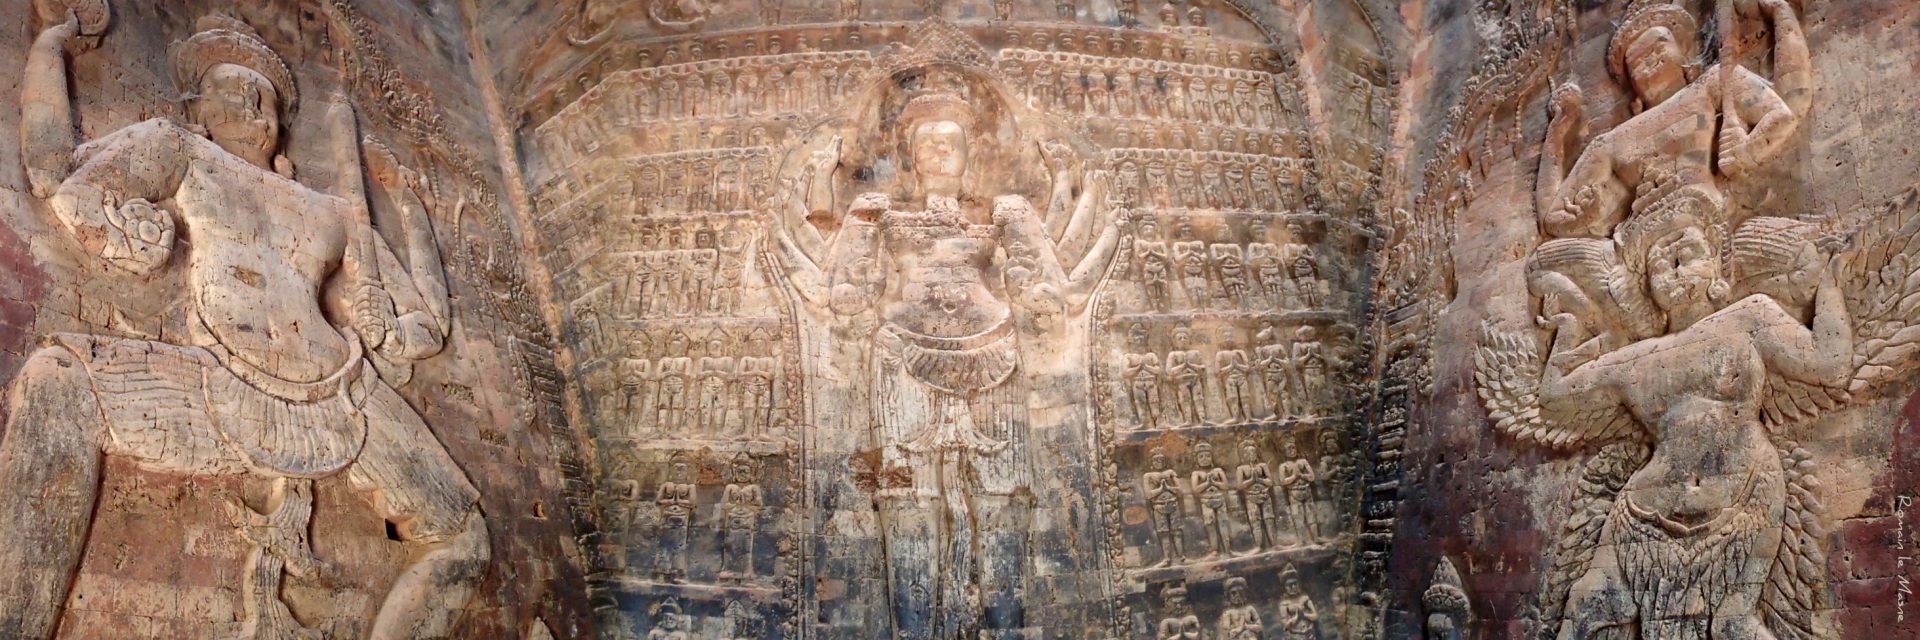 Triple Vishnu - Angkor